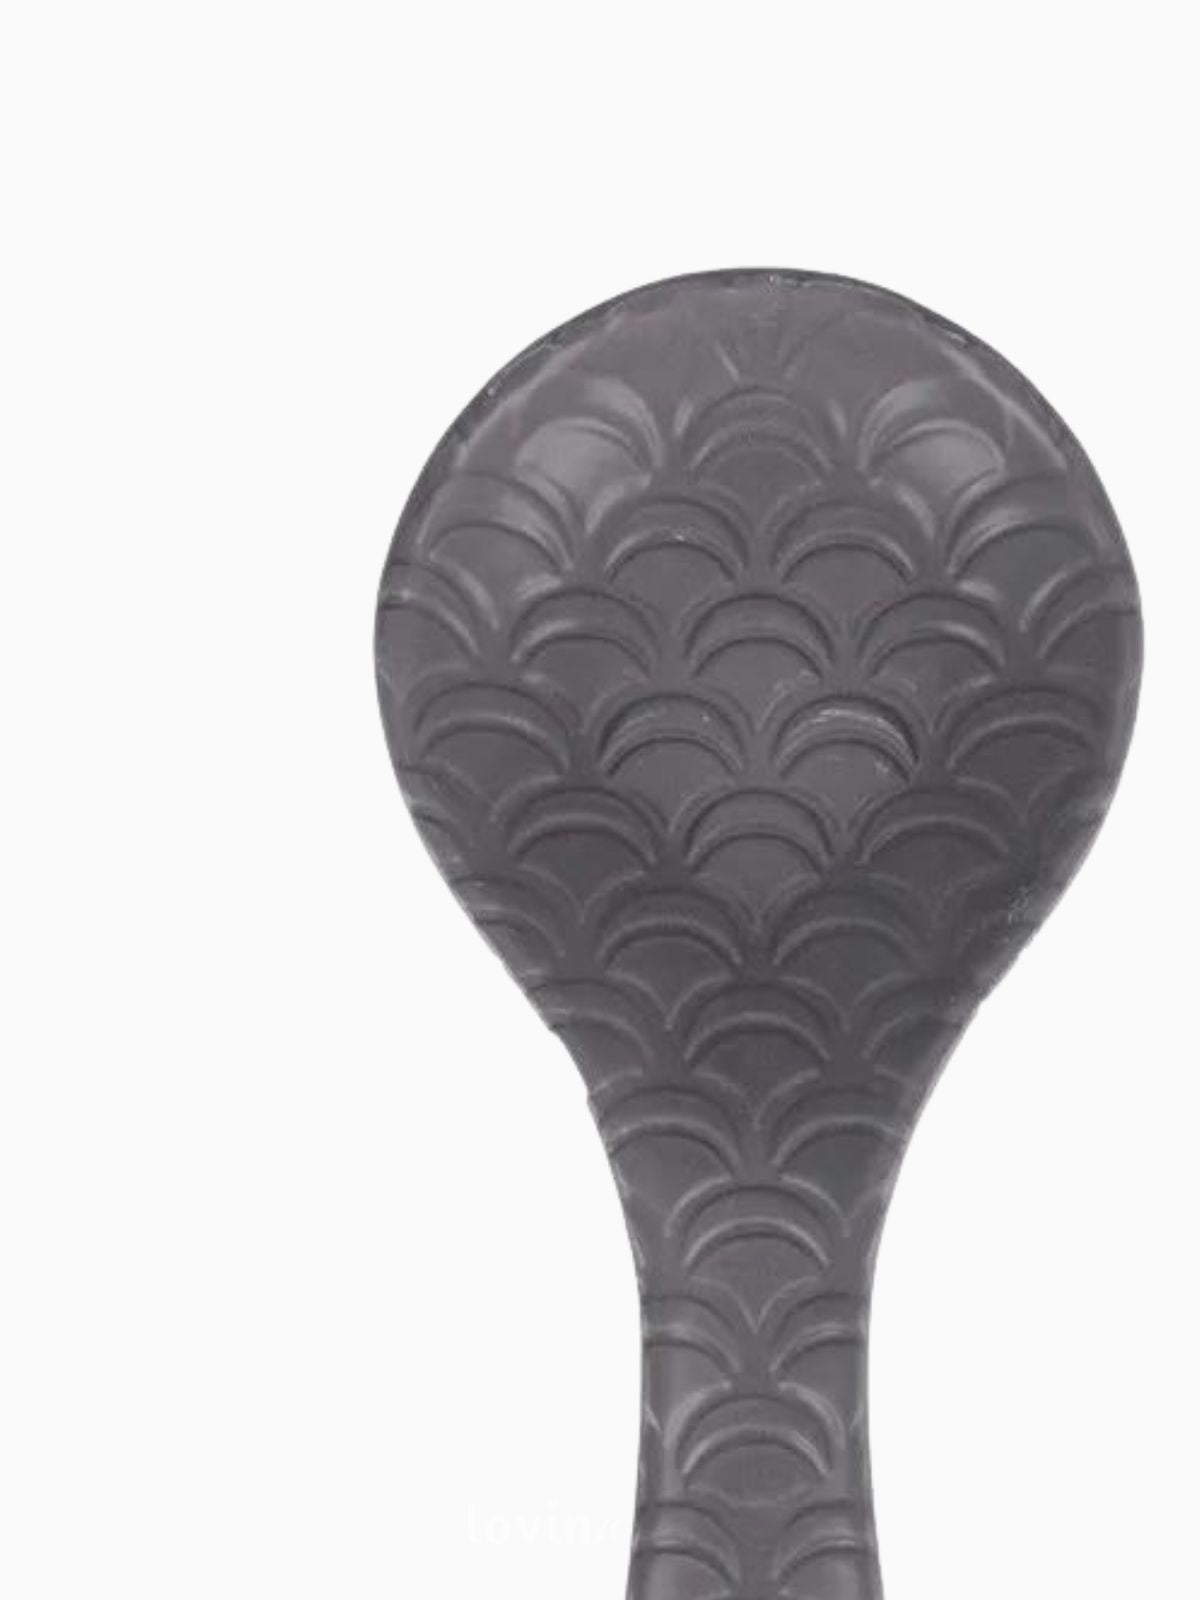 Poggiamestolo in ceramica Shapes, in colore grigio chiaro-2